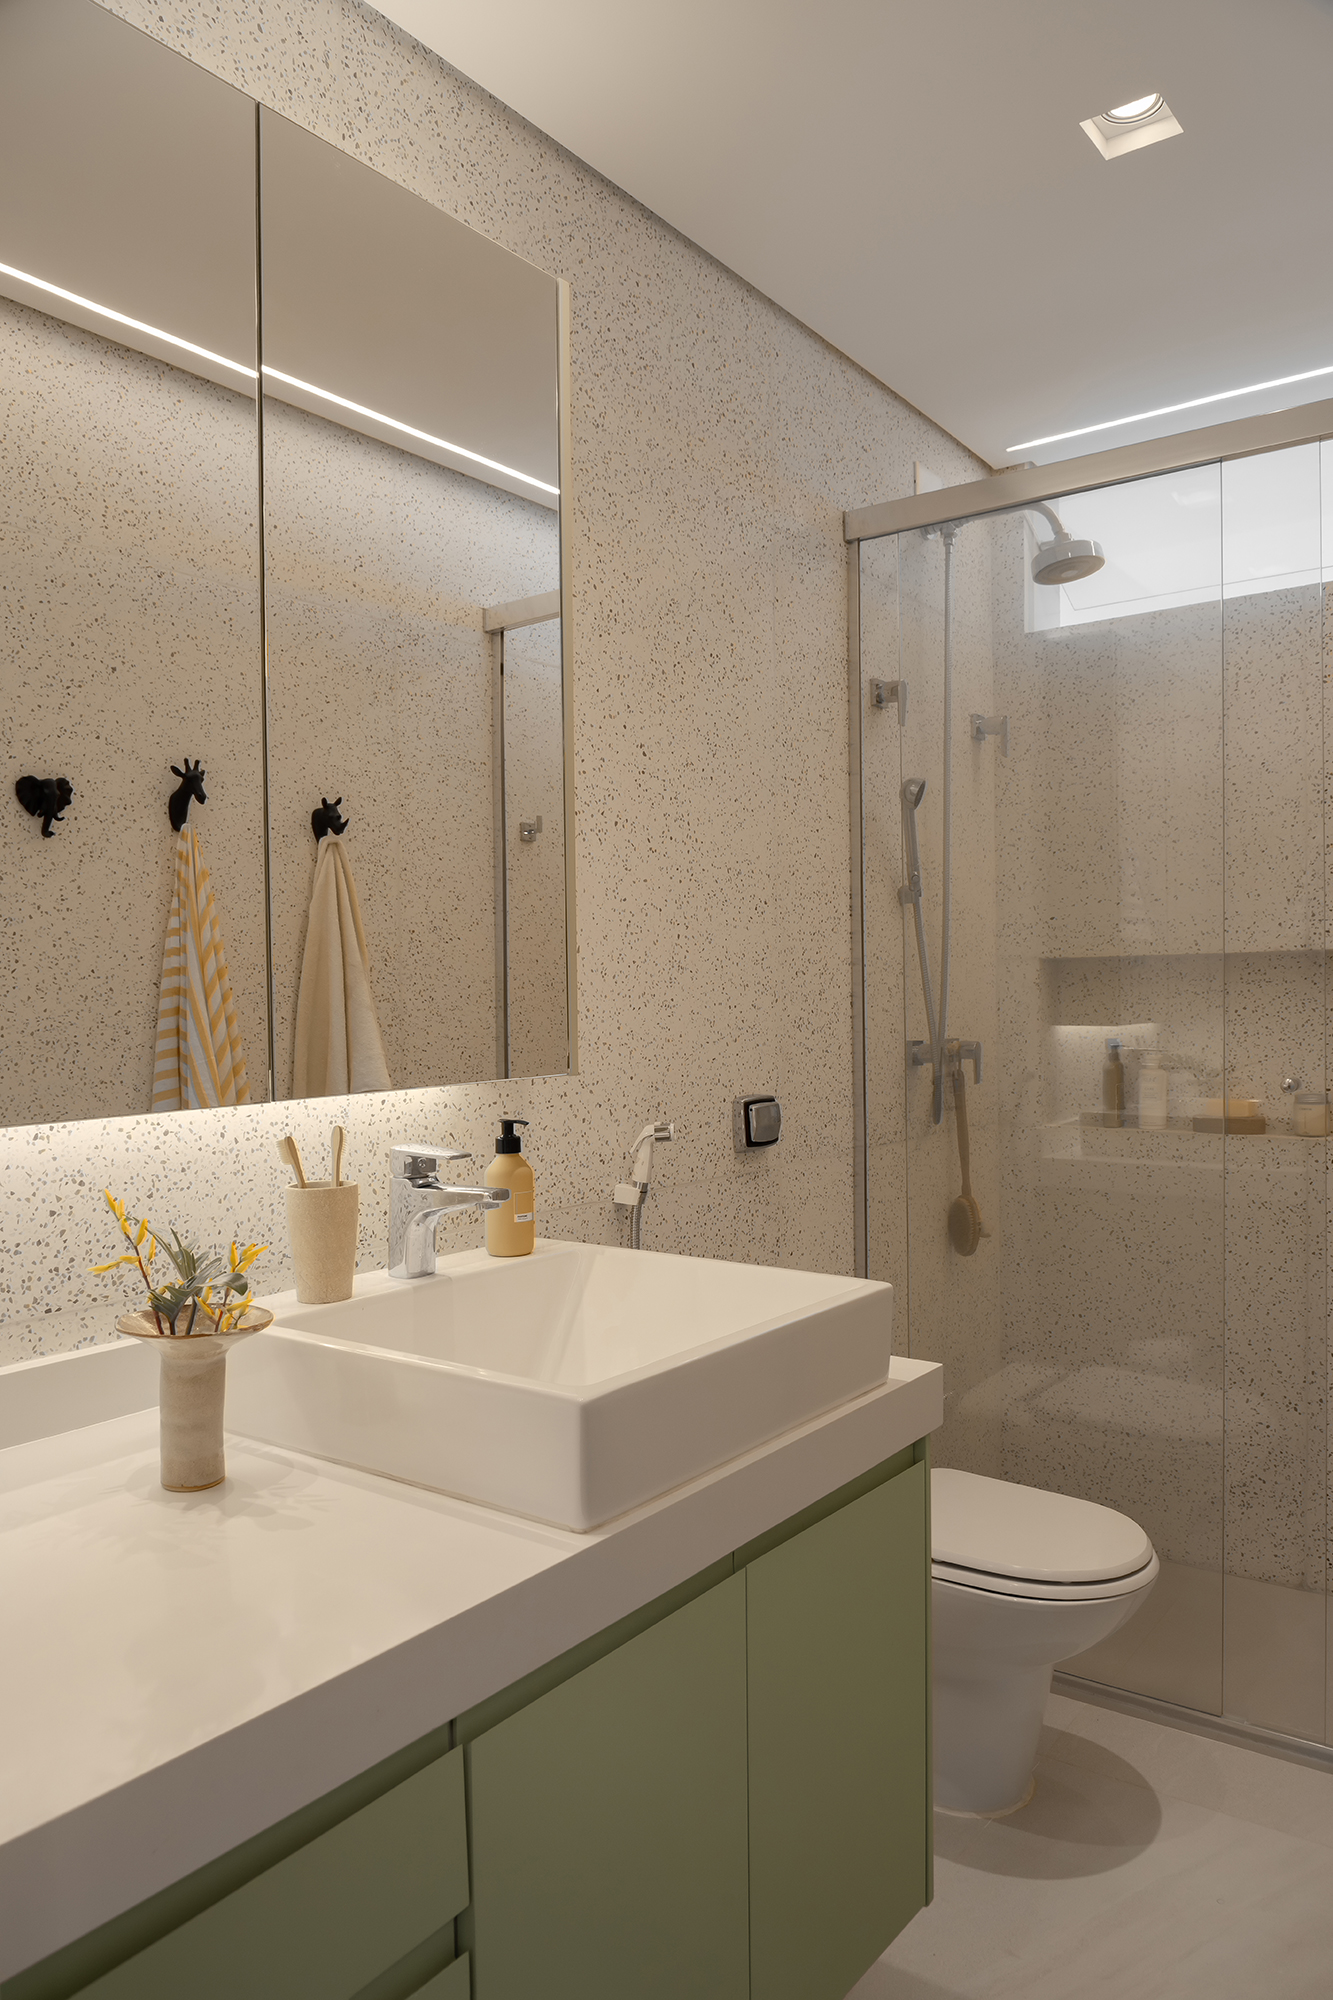 Apartamento de 188 m² ganha dois cooktops na cozinha e balanços na sala, Projeto Raízes Arquitetos. Na foto, banheiro com marcenaria verde.